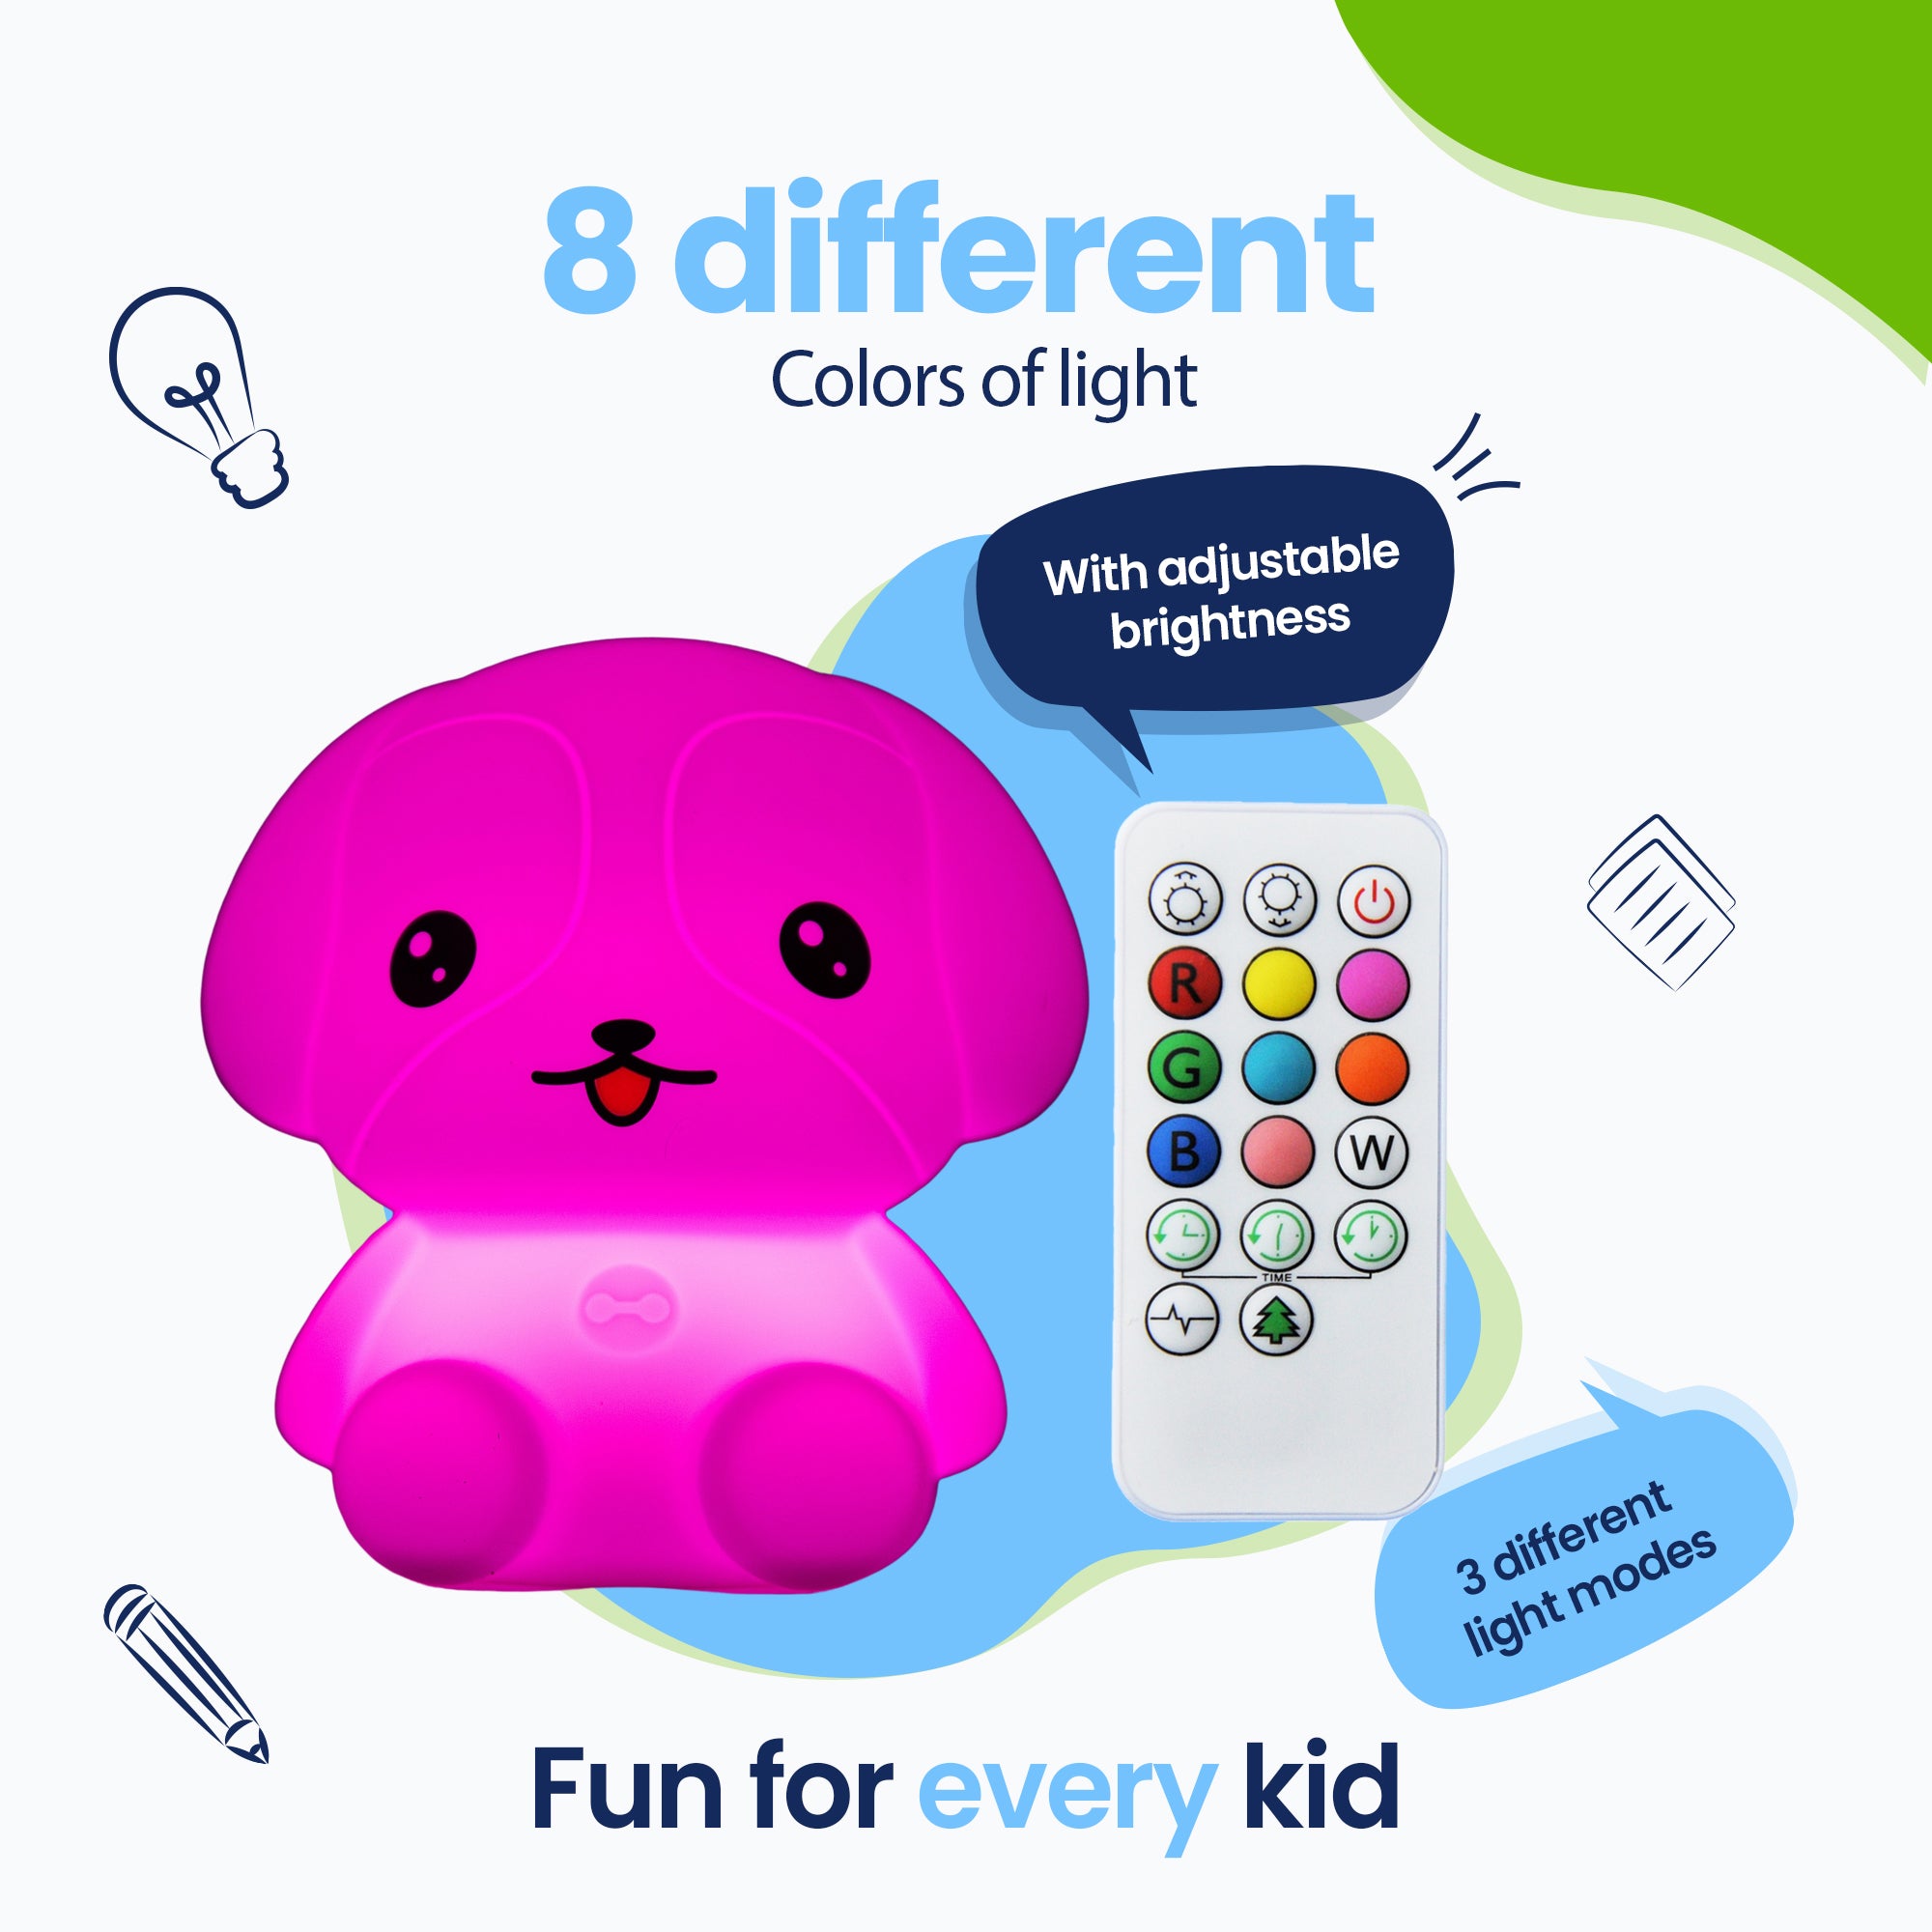 8 cores diferentes de luz - 3 modos de luz diferentes - Diversão para todas as crianças